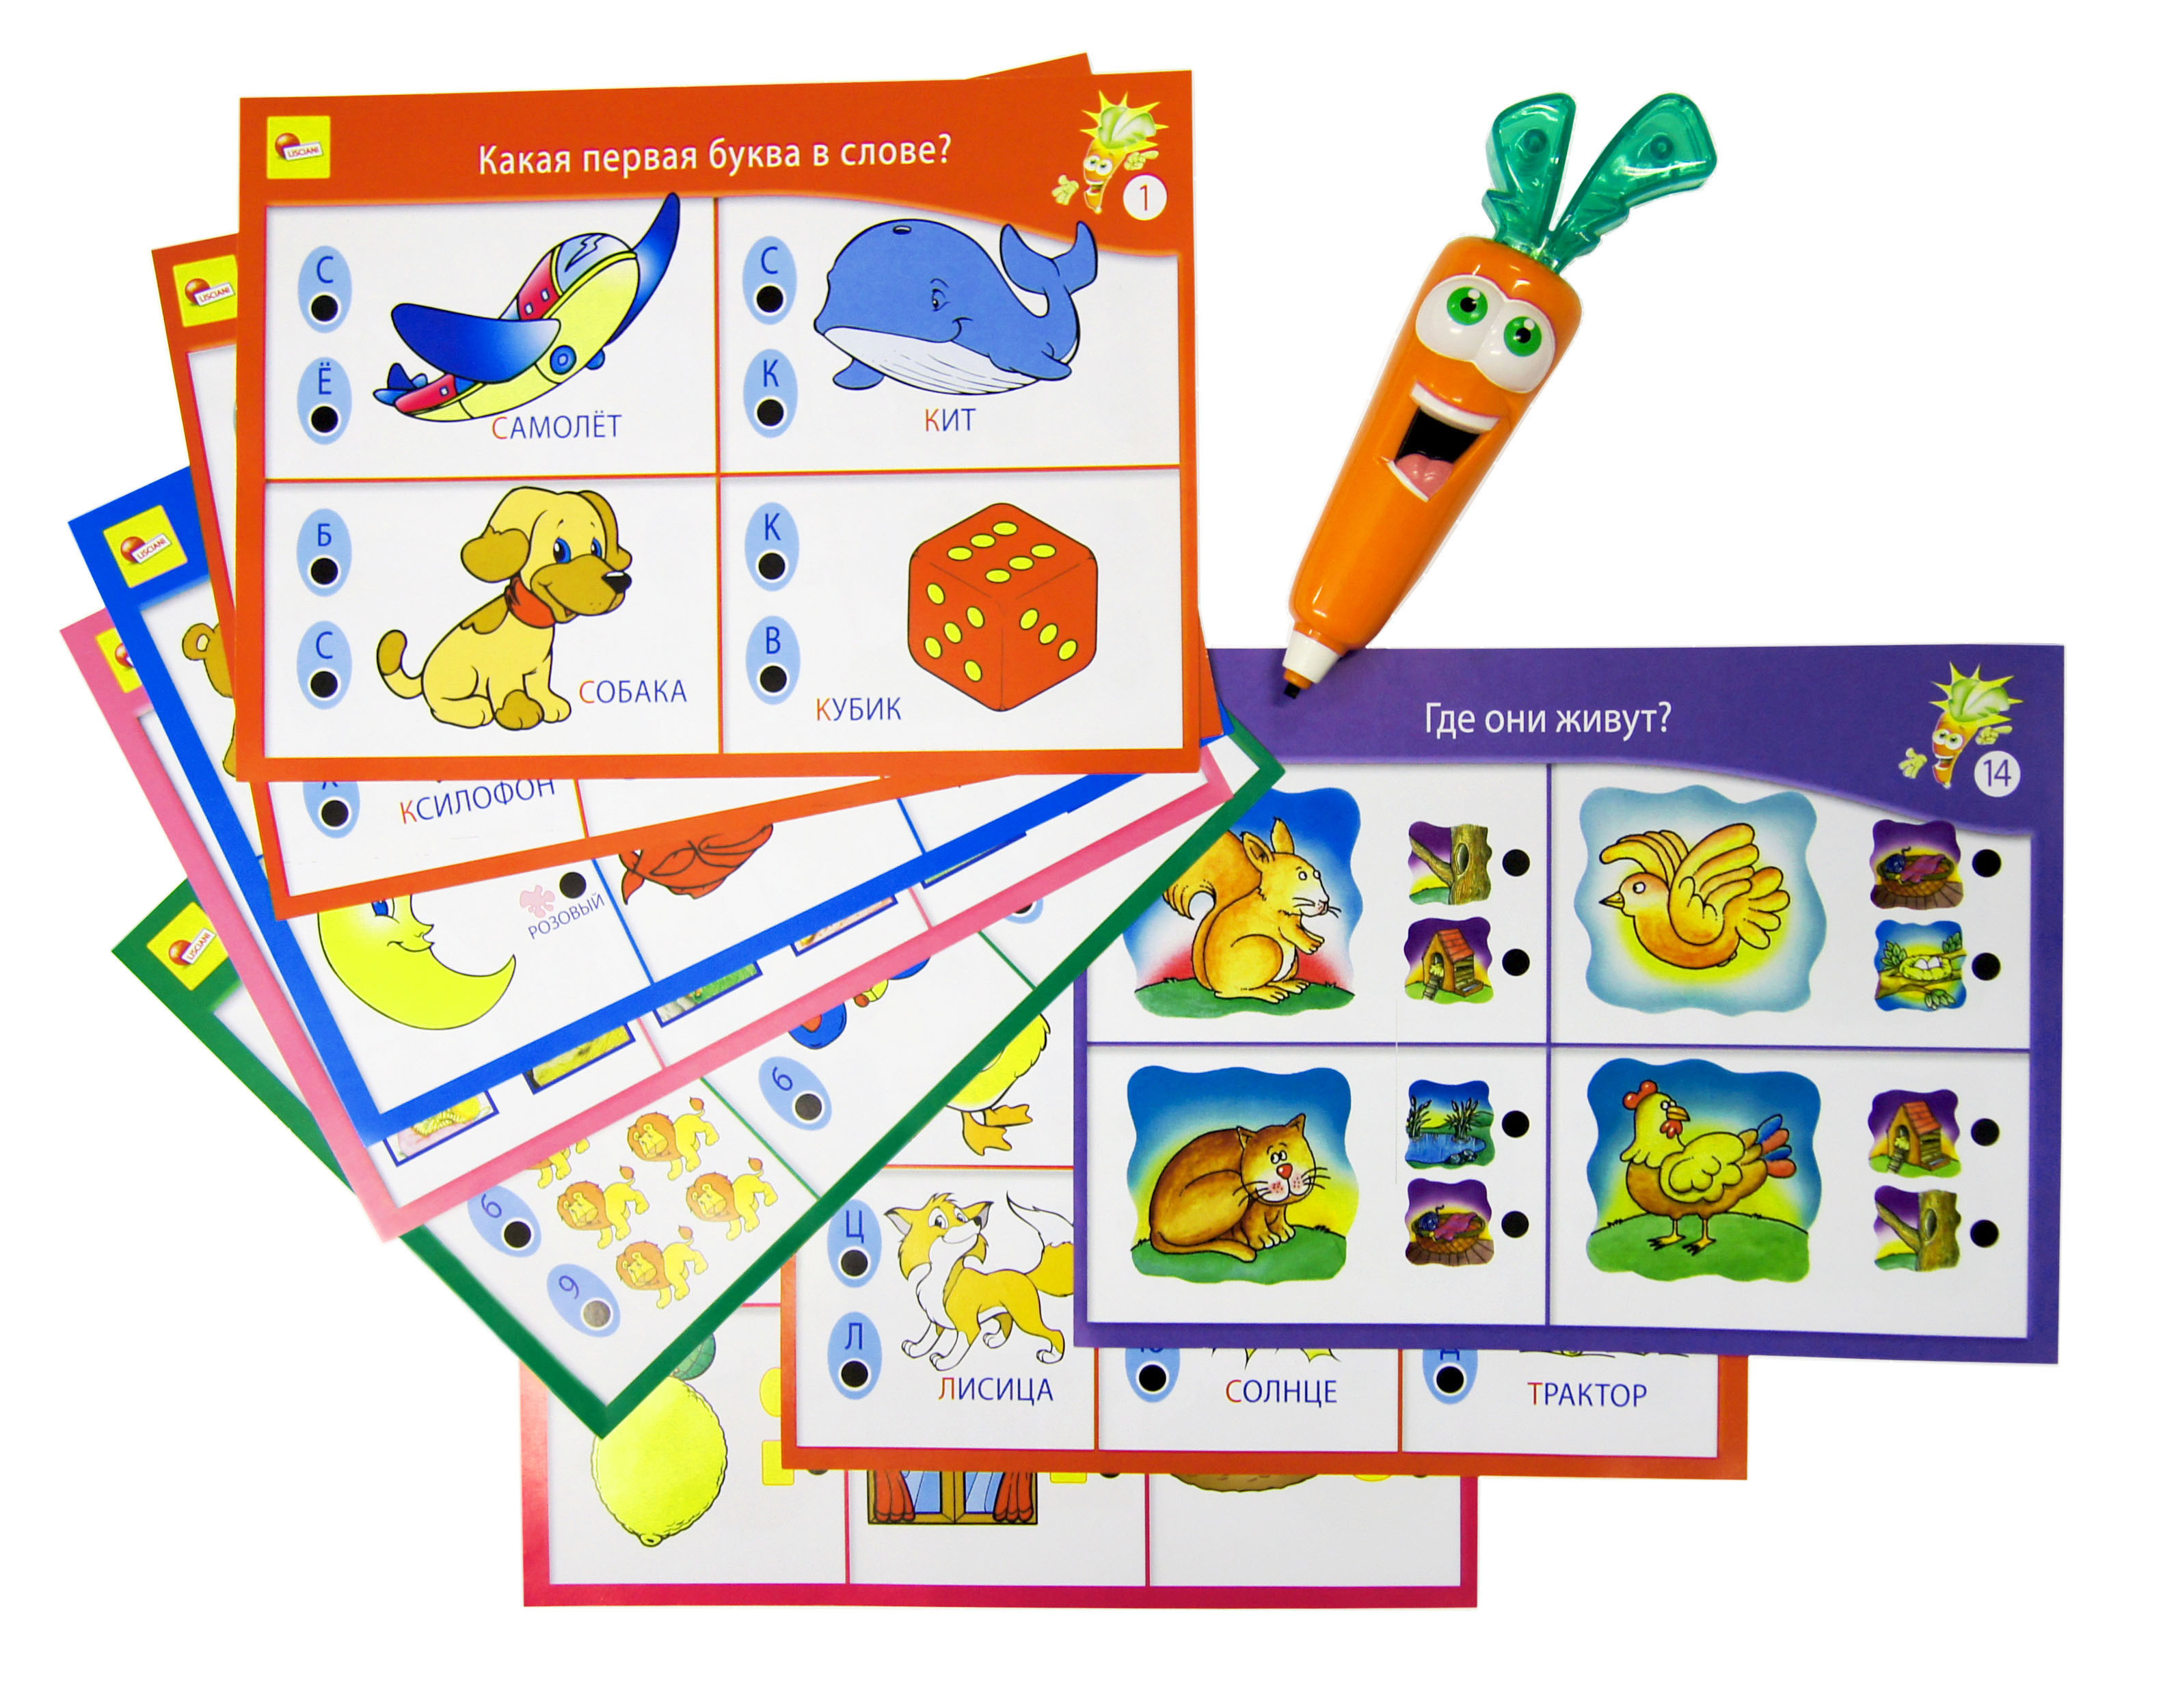 Обучающая игра Для самых маленьких с интерактивной Морковкой